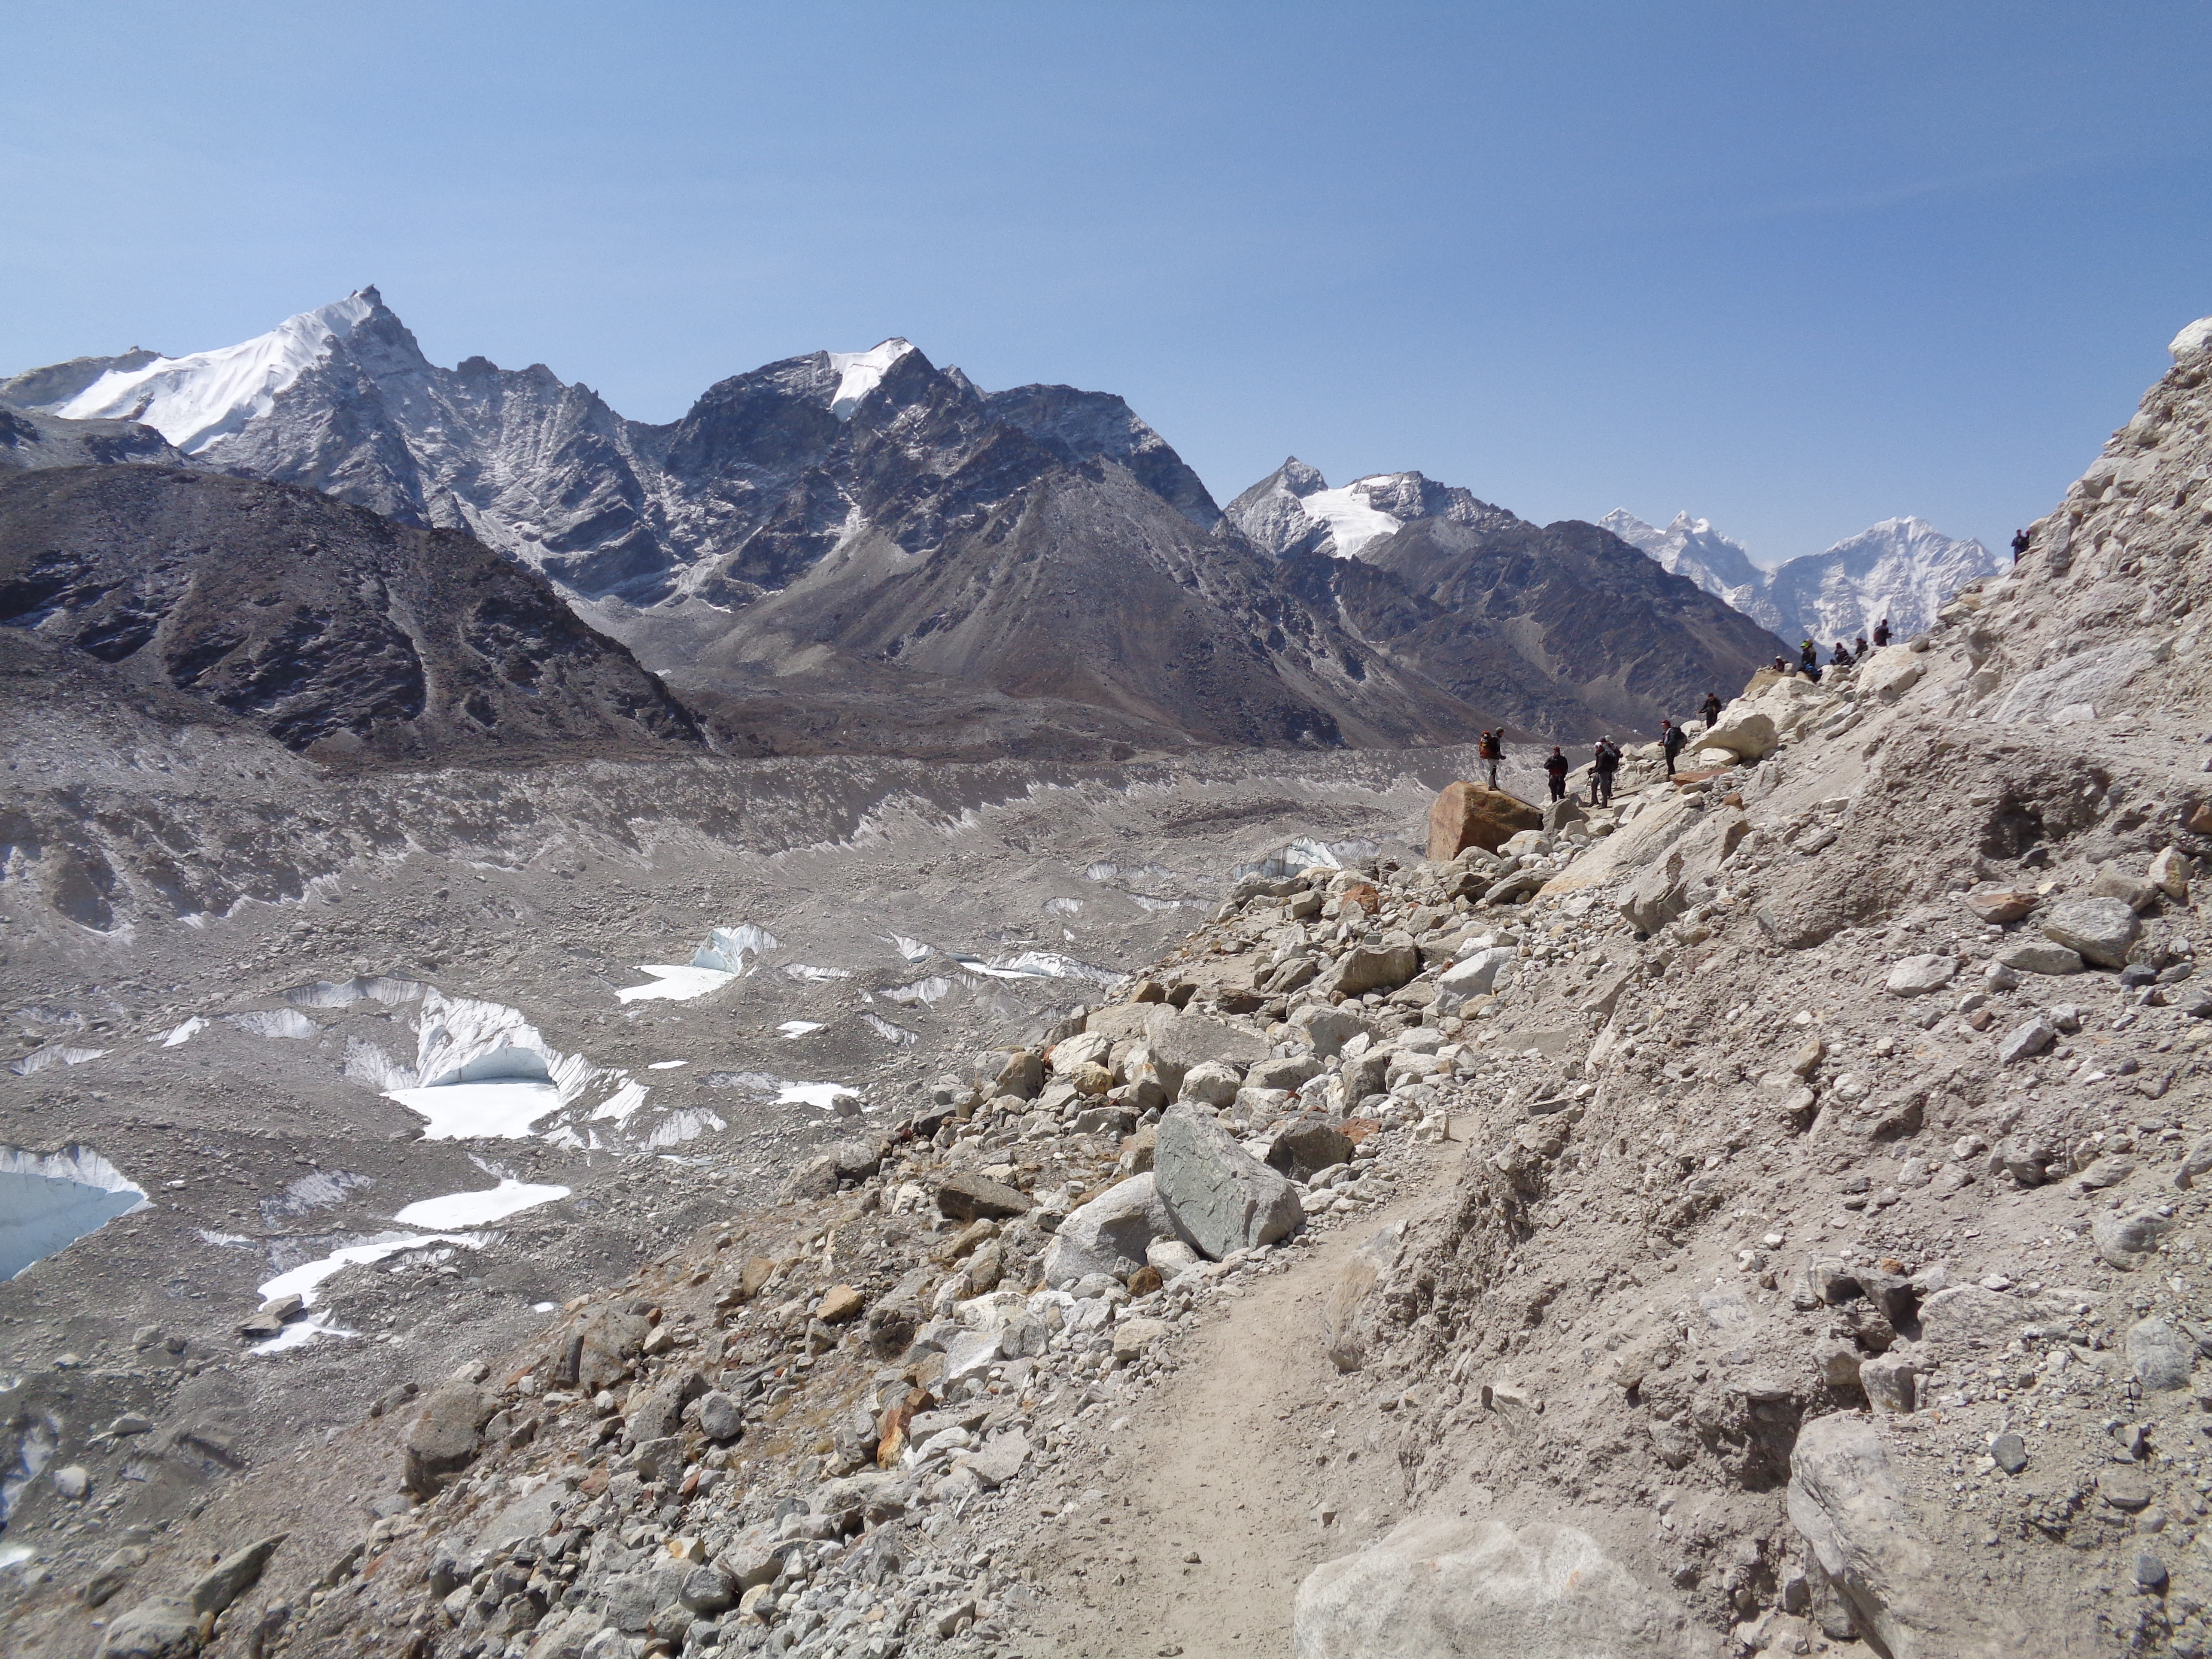 landslide area outside Everest base camp